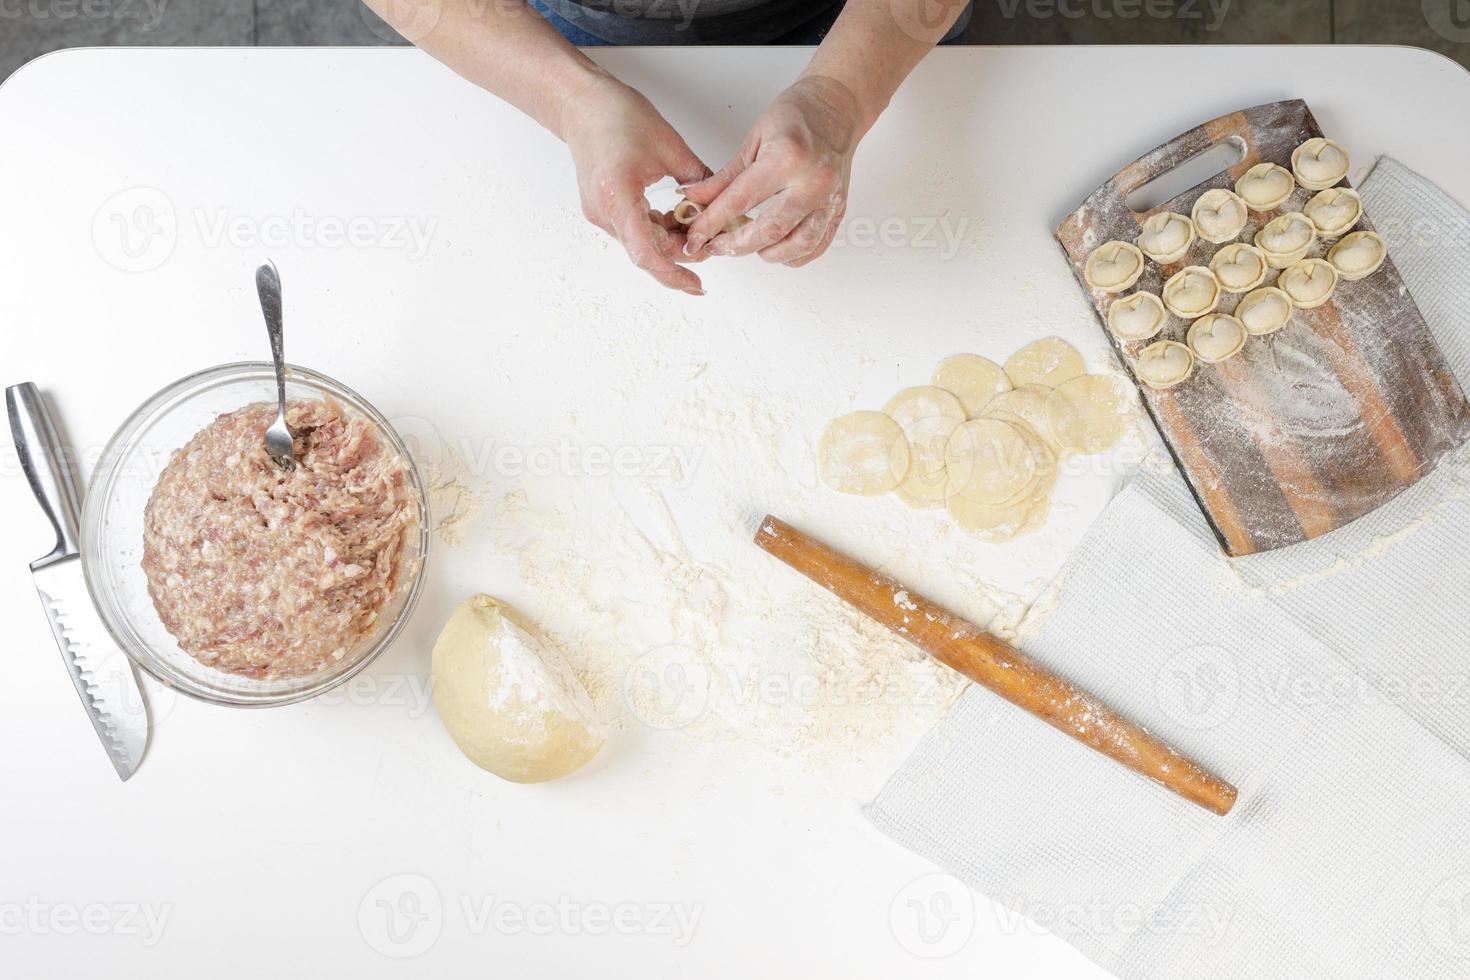 zelfgemaakte dumplings in de keuken zonder versieringen. dumplings maken met varkensgehakt, rundvlees en kip foto